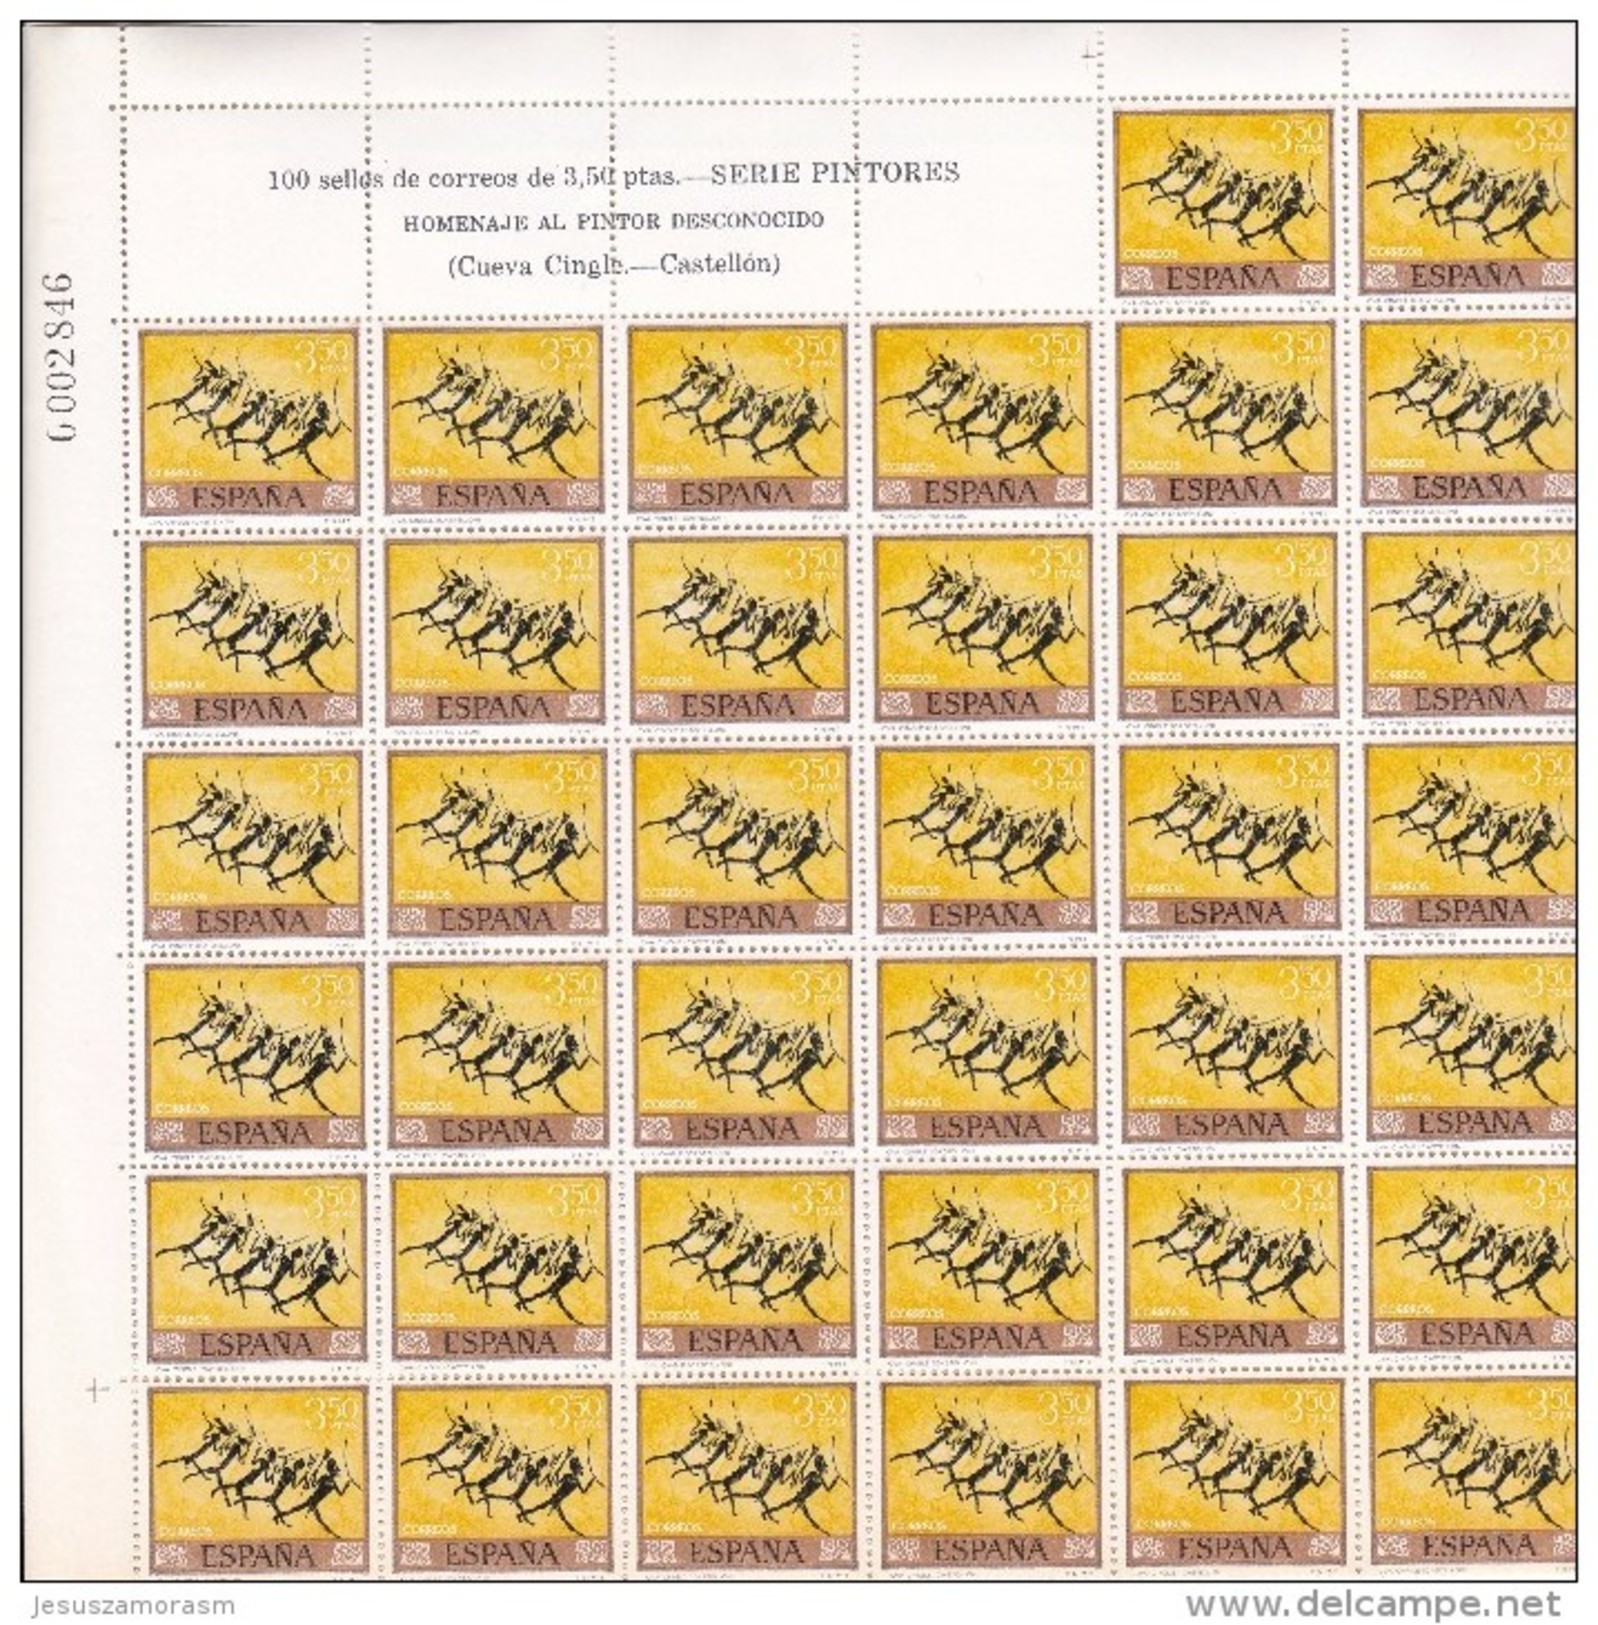 España nº 1779 al 1788 - 100 series en pliego